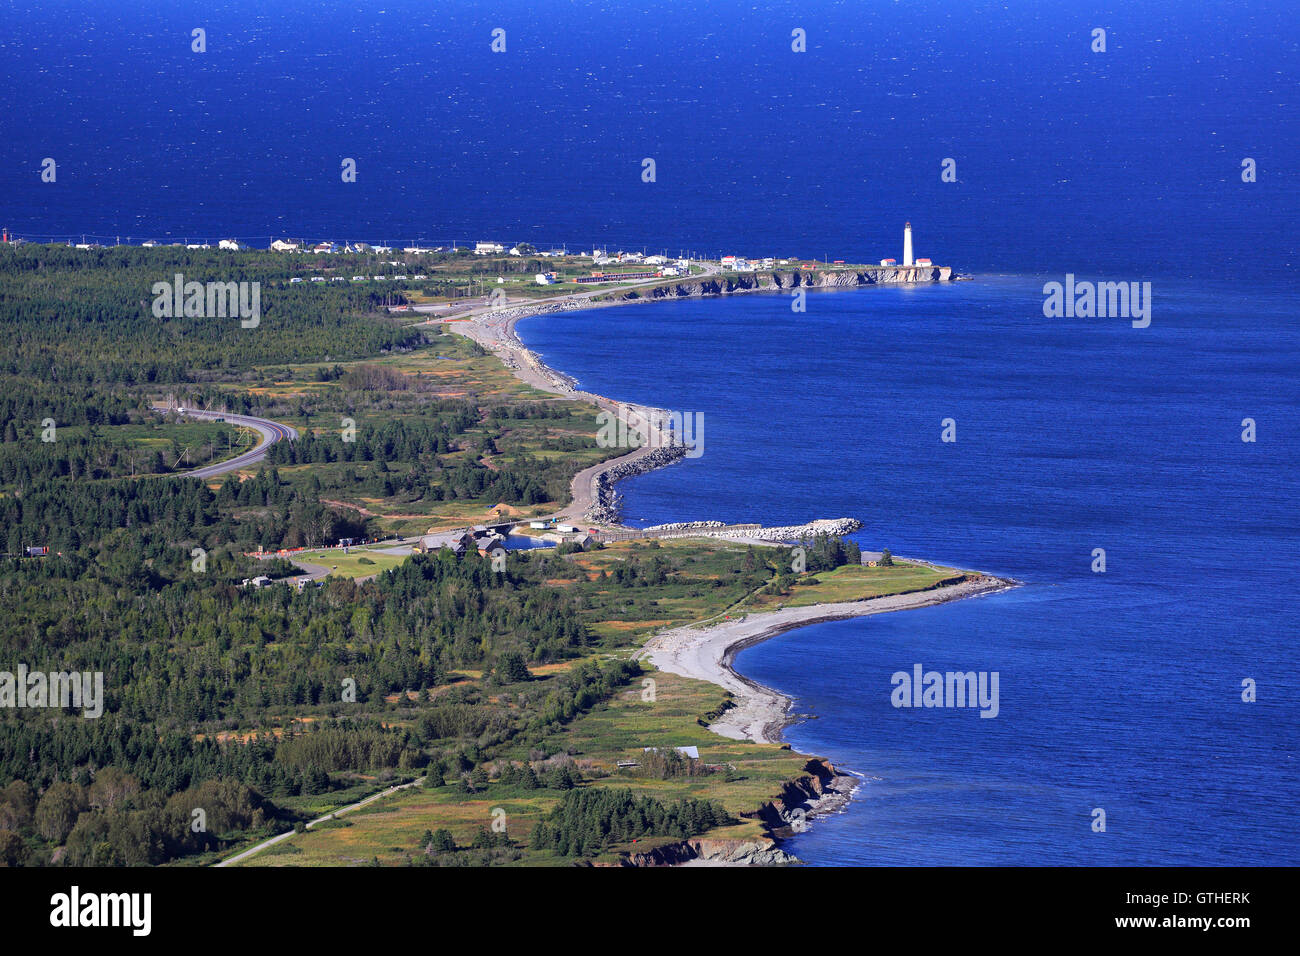 Le phare de Cap des Rosiers, vue aérienne, de la Gaspésie, Québec, Canada Banque D'Images